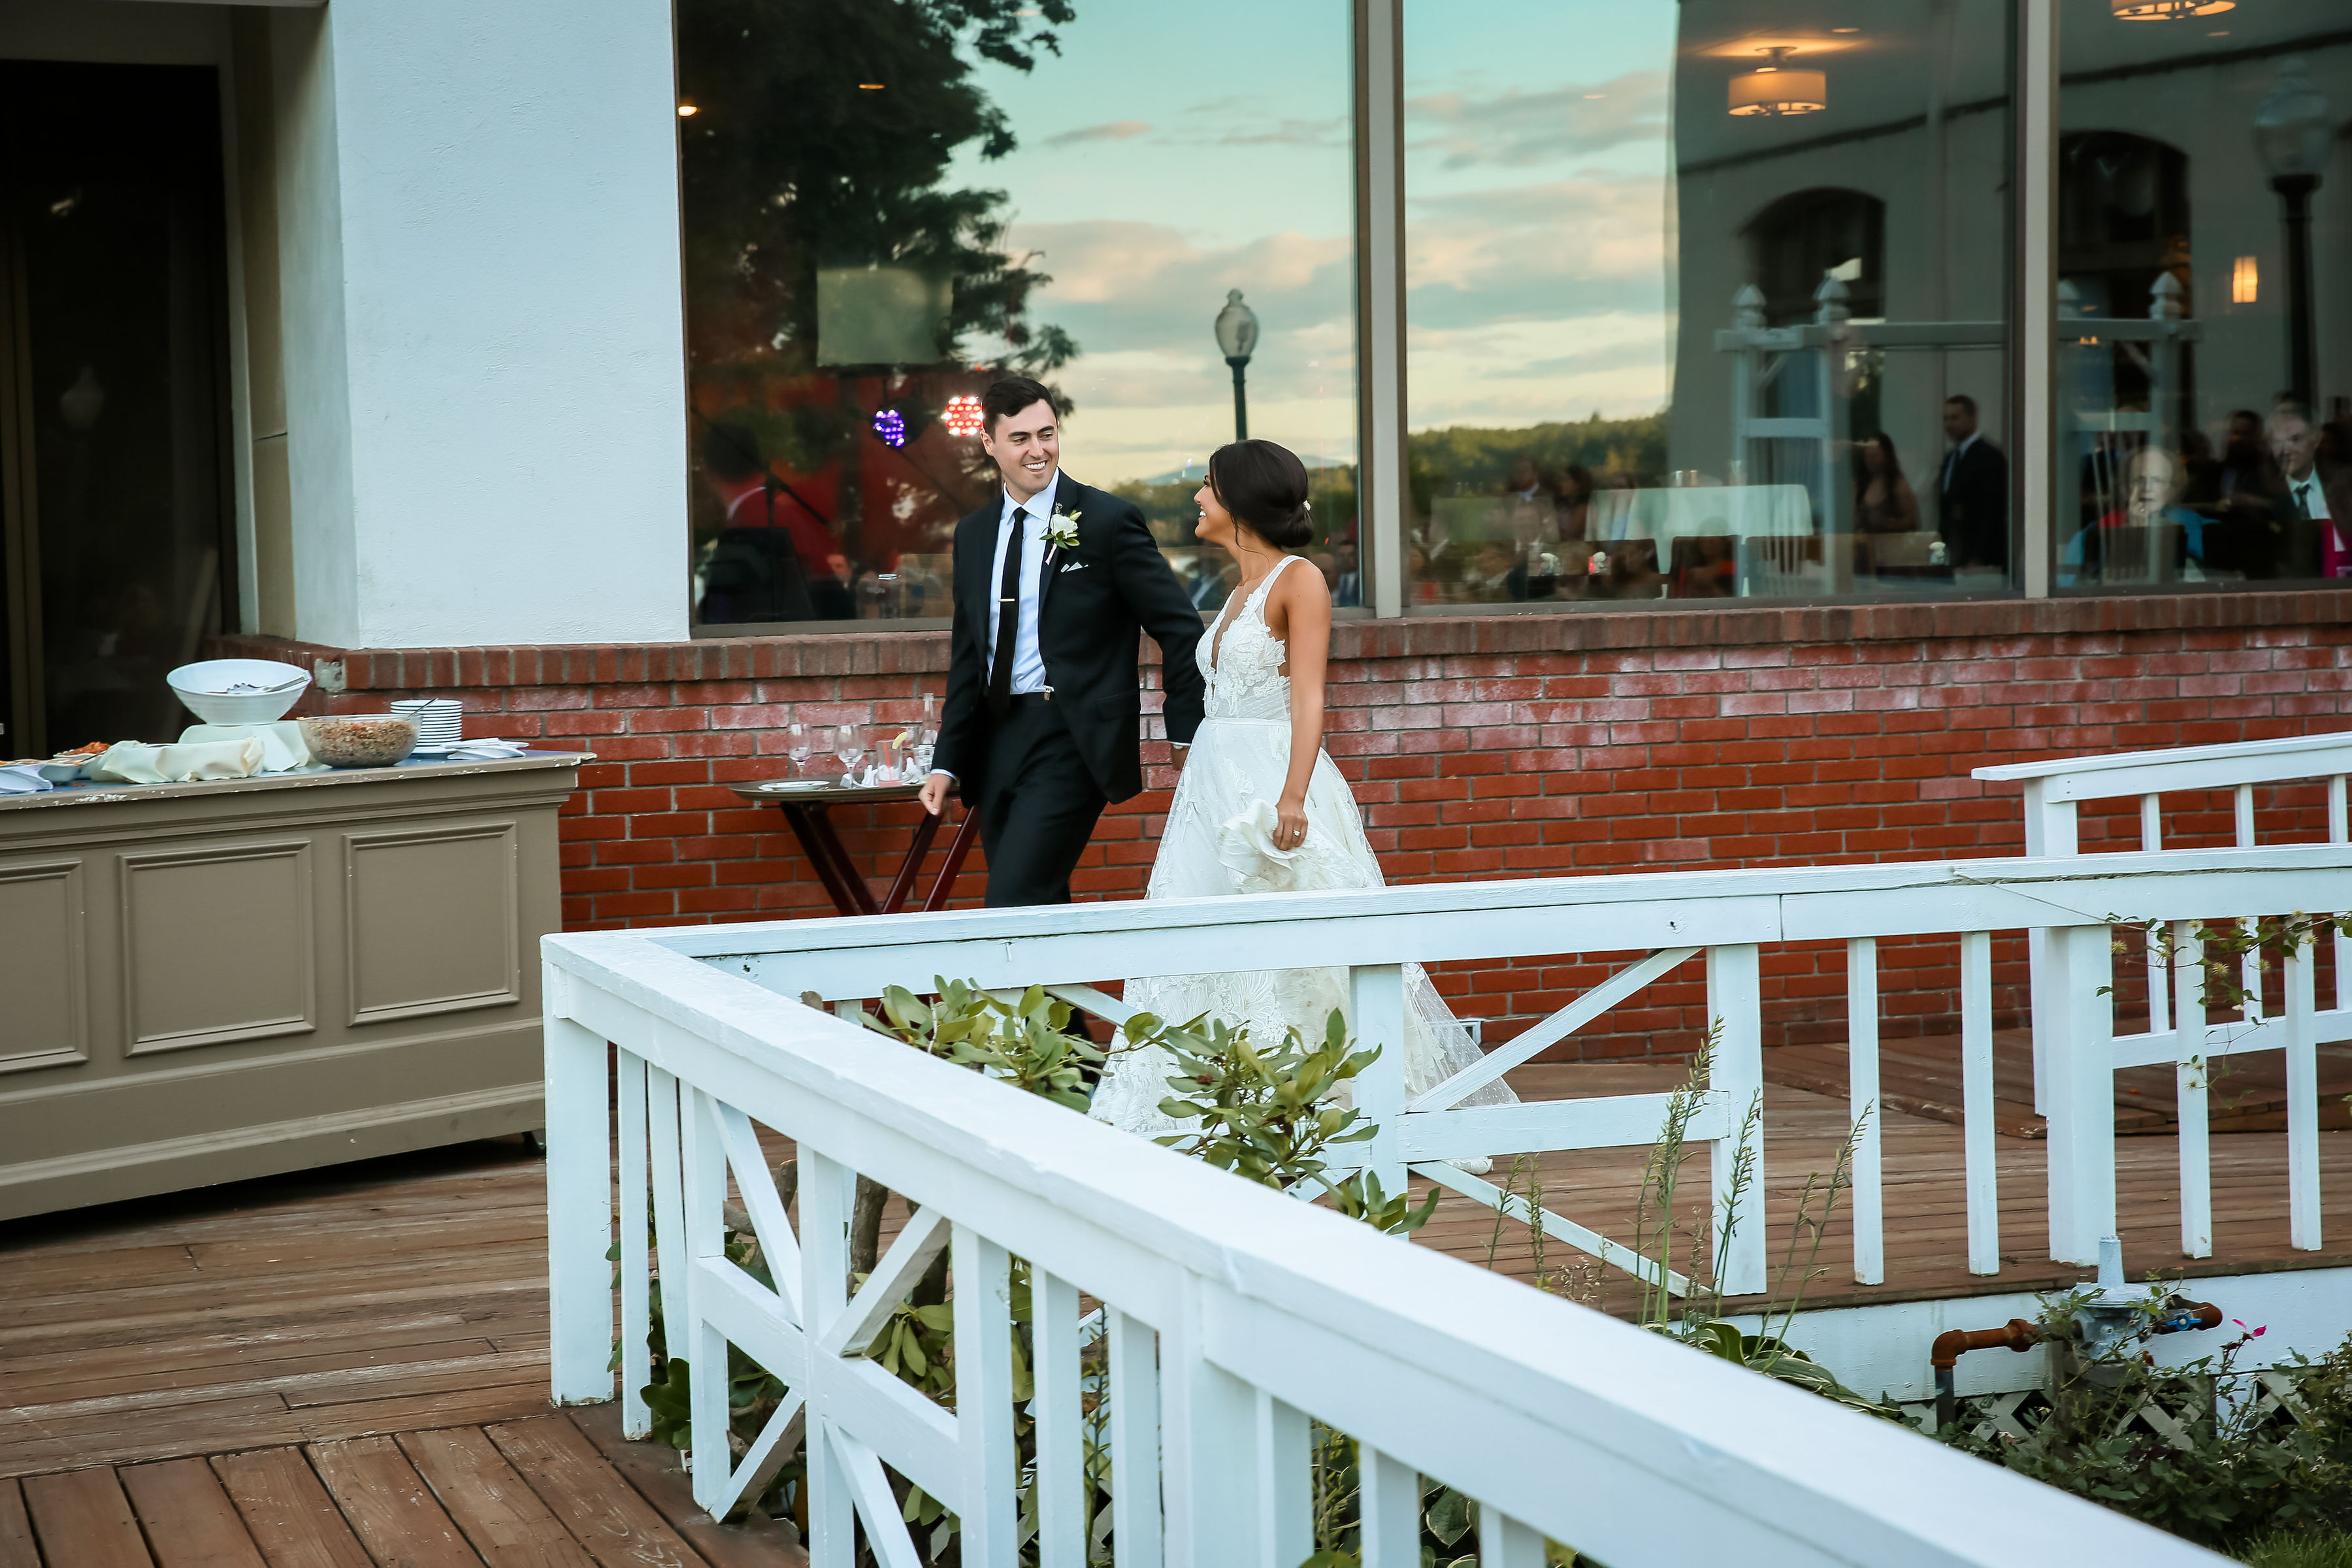 wedding couple walks across outdoor deck